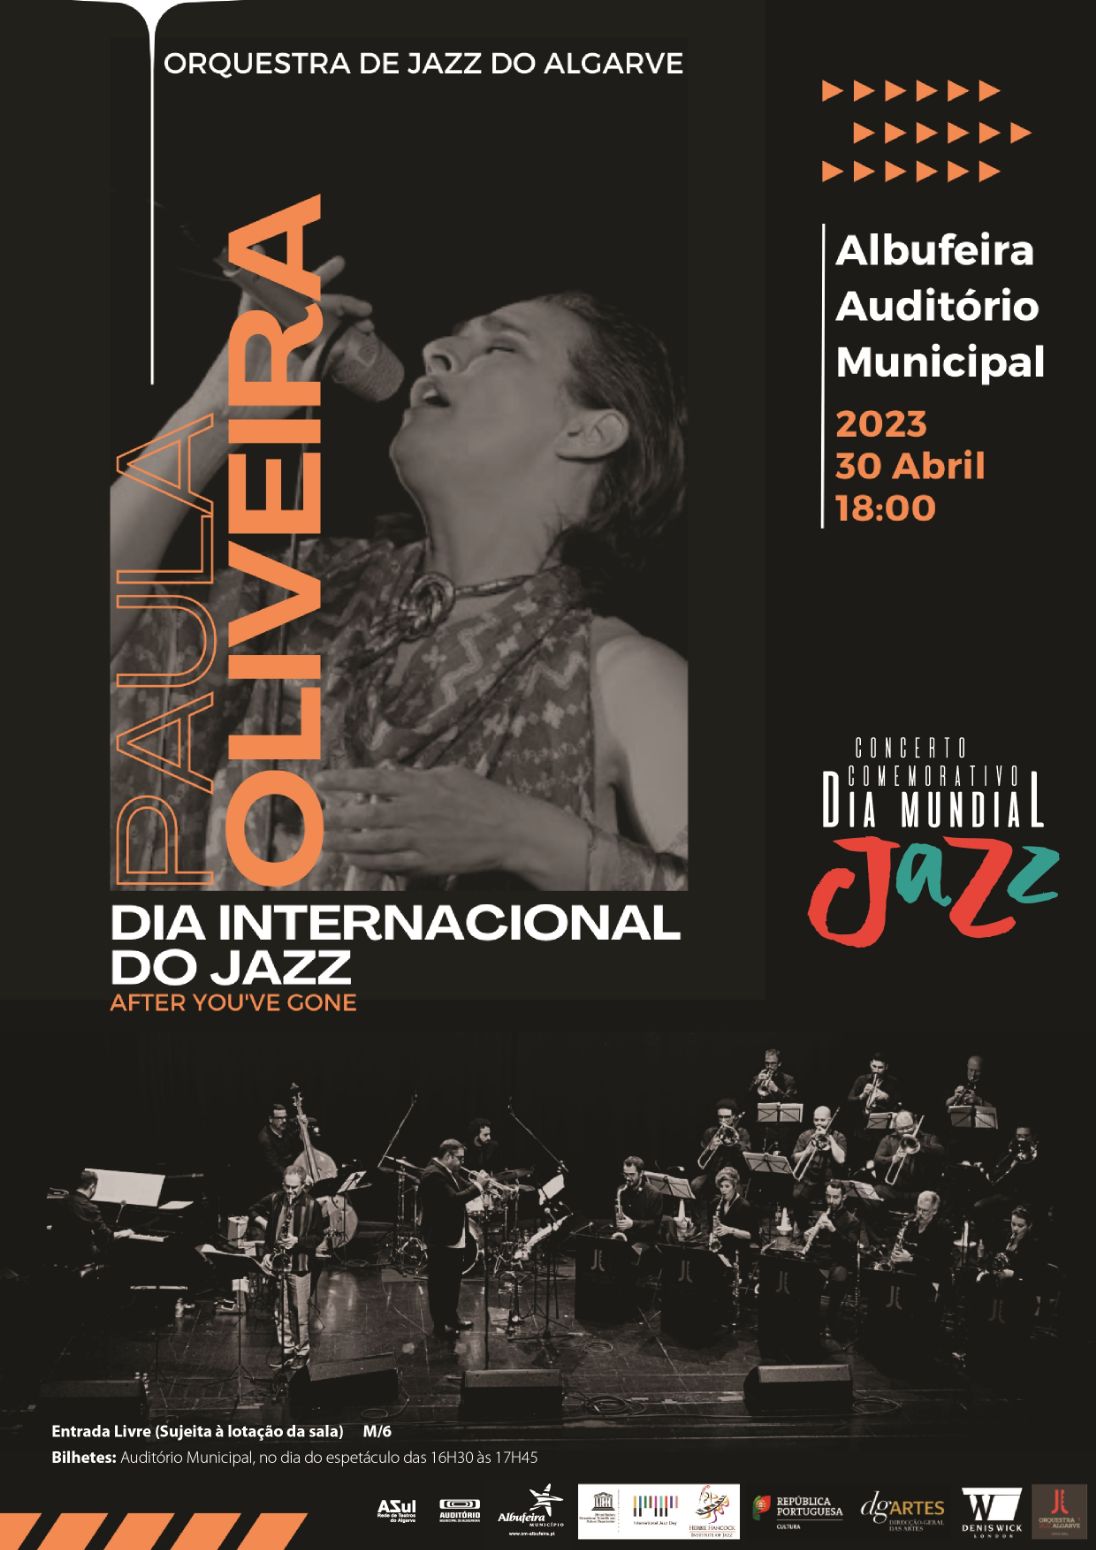 Albufeira celebra o Dia Internacional do Jazz com Concerto pela Orquestra Jazz do Algarve e Paula Oliveira